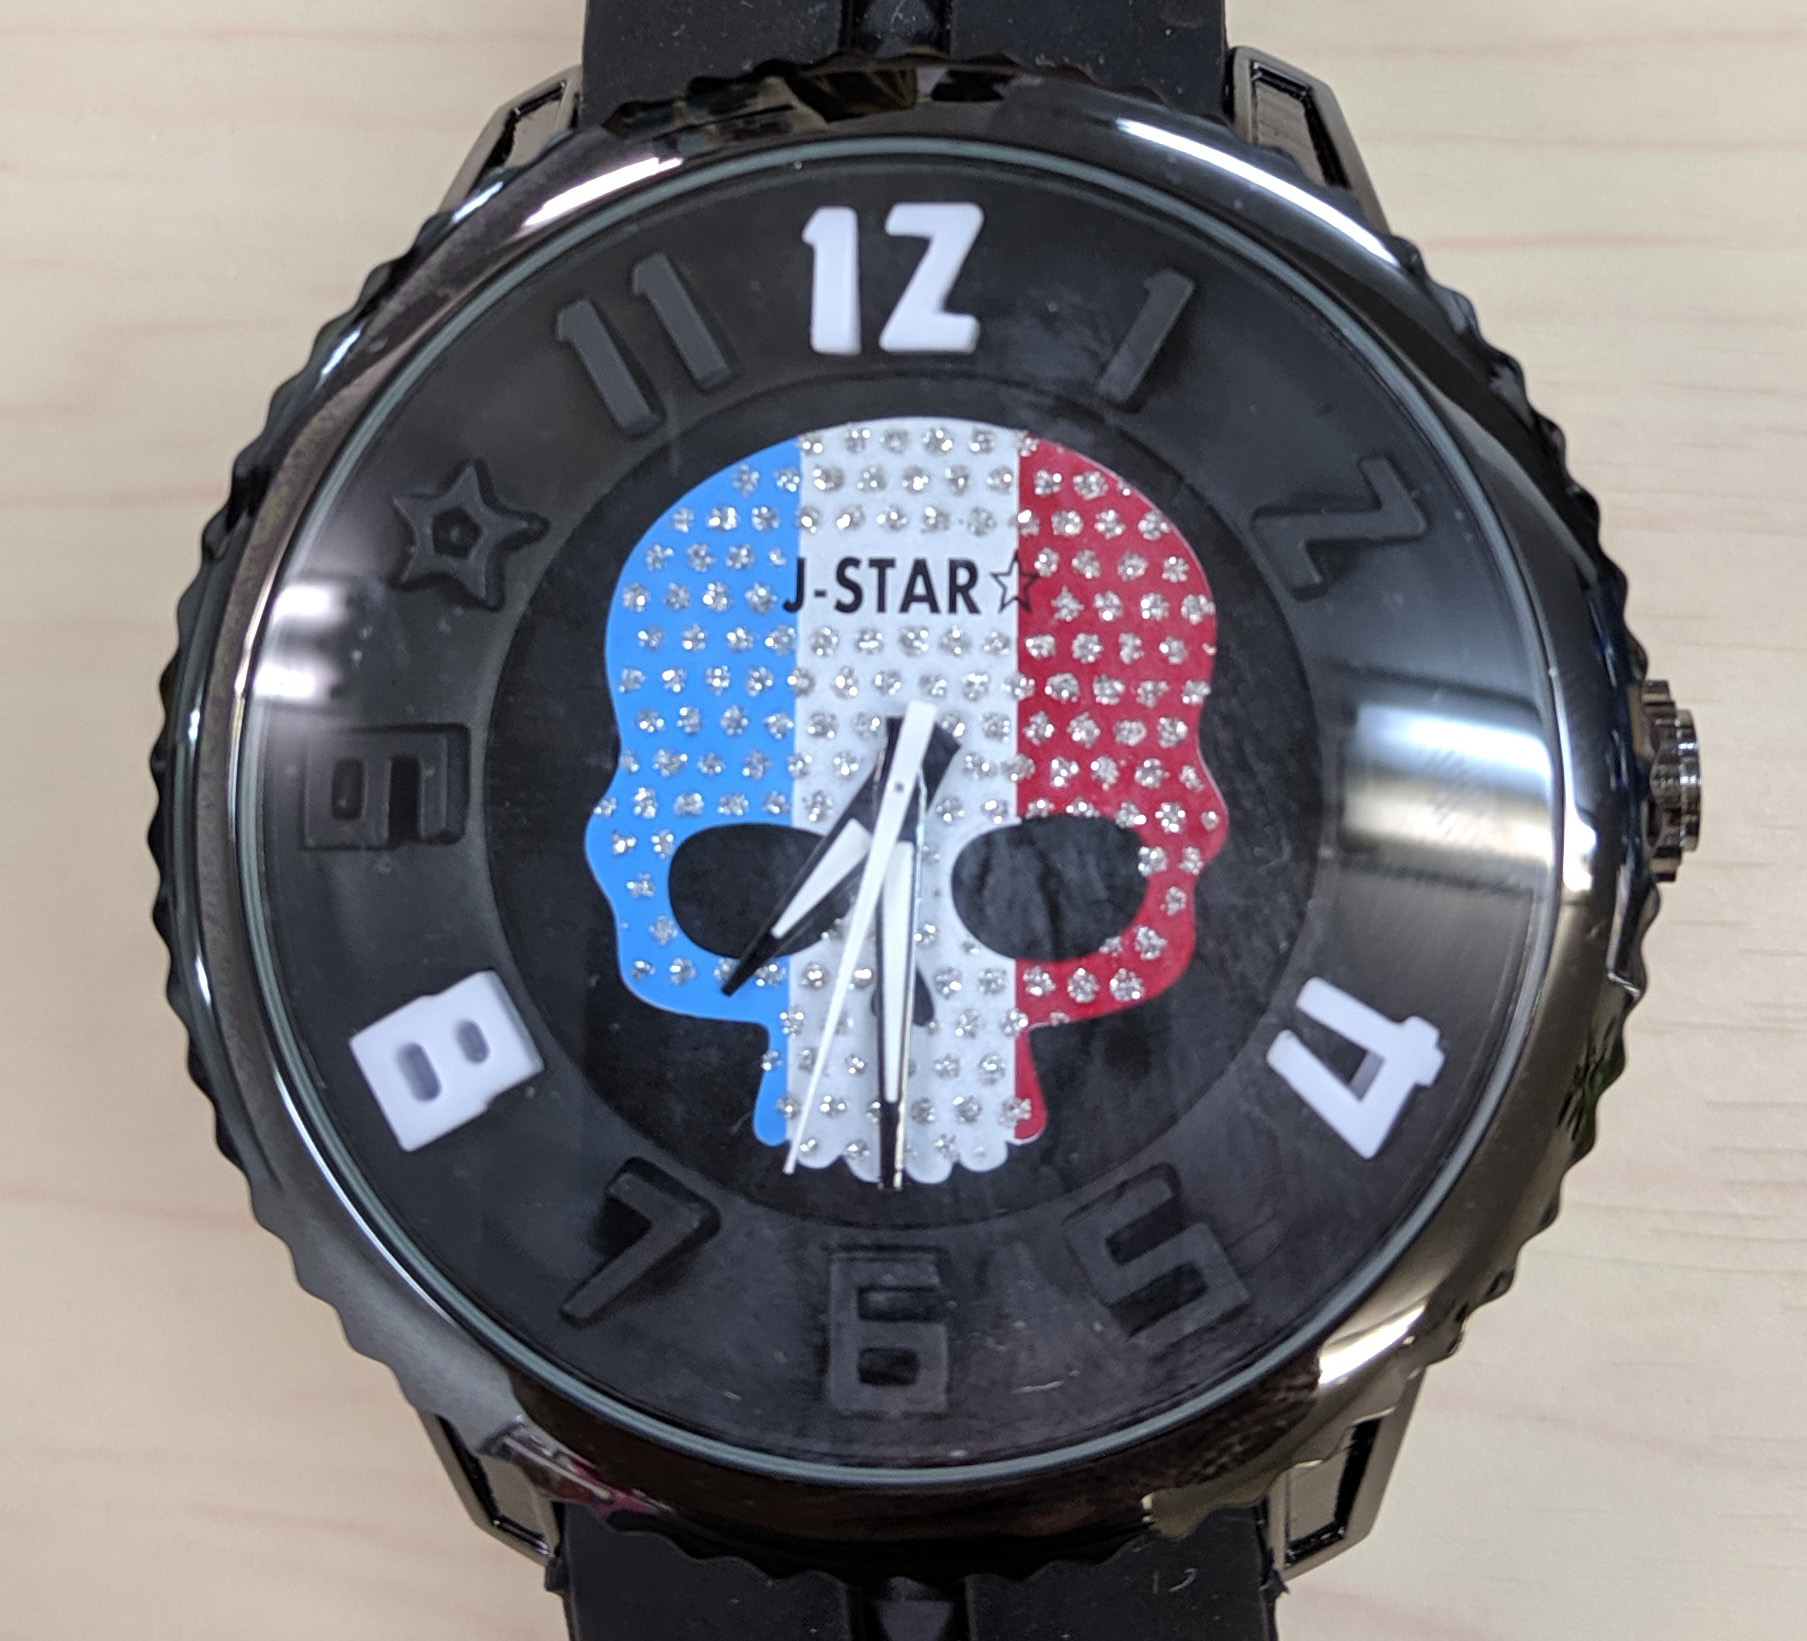 検証 閉店セール 今だけ1000円 のお店で腕時計を買って その販売価格をネットで調べてみた ロケットニュース24